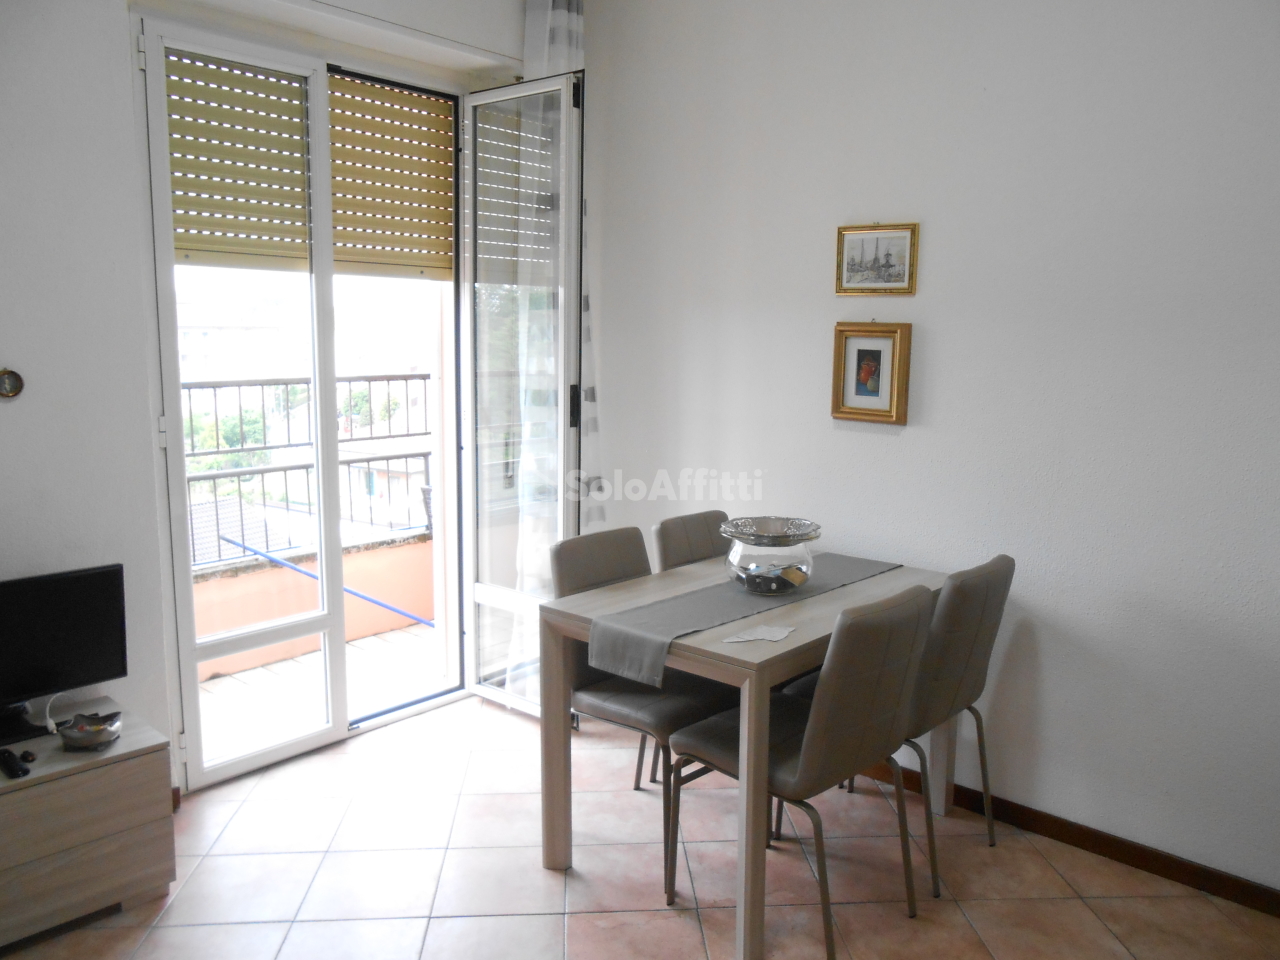 Appartamento in affitto a Pavia, 2 locali, prezzo € 470 | PortaleAgenzieImmobiliari.it